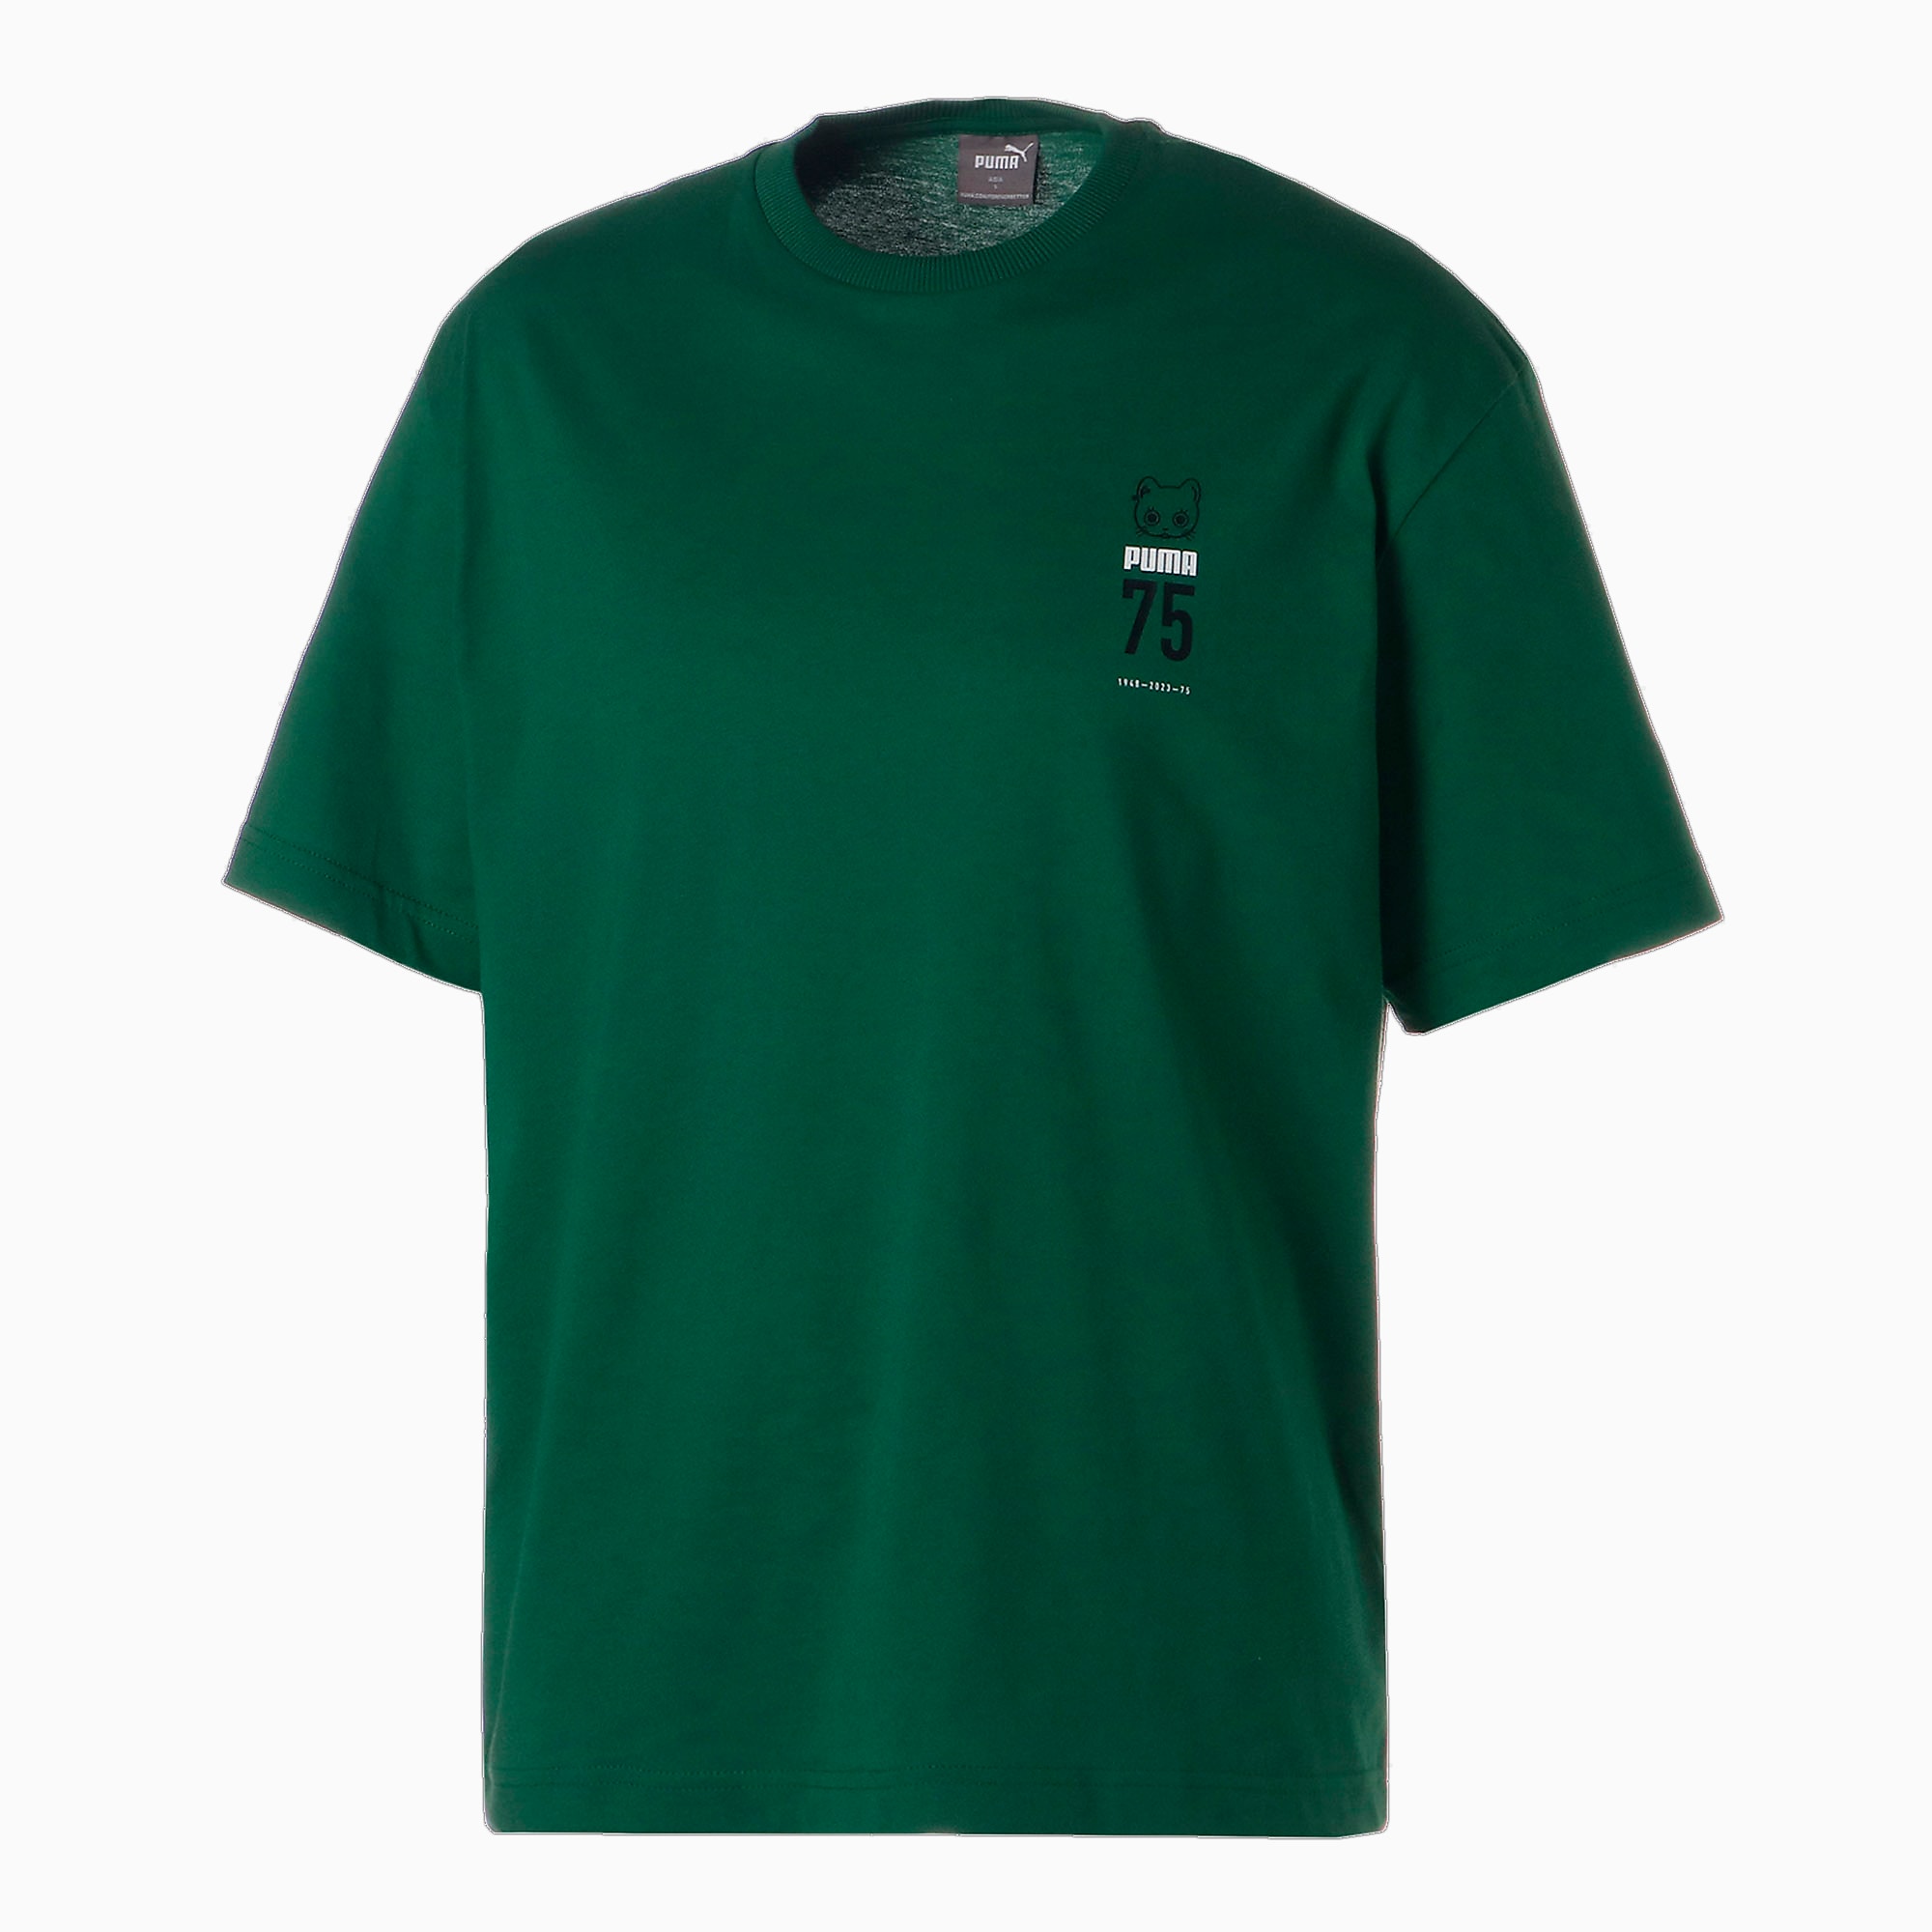 ユニセックス NEKO SAN 75周年記念モデル セレブレーション Tシャツ